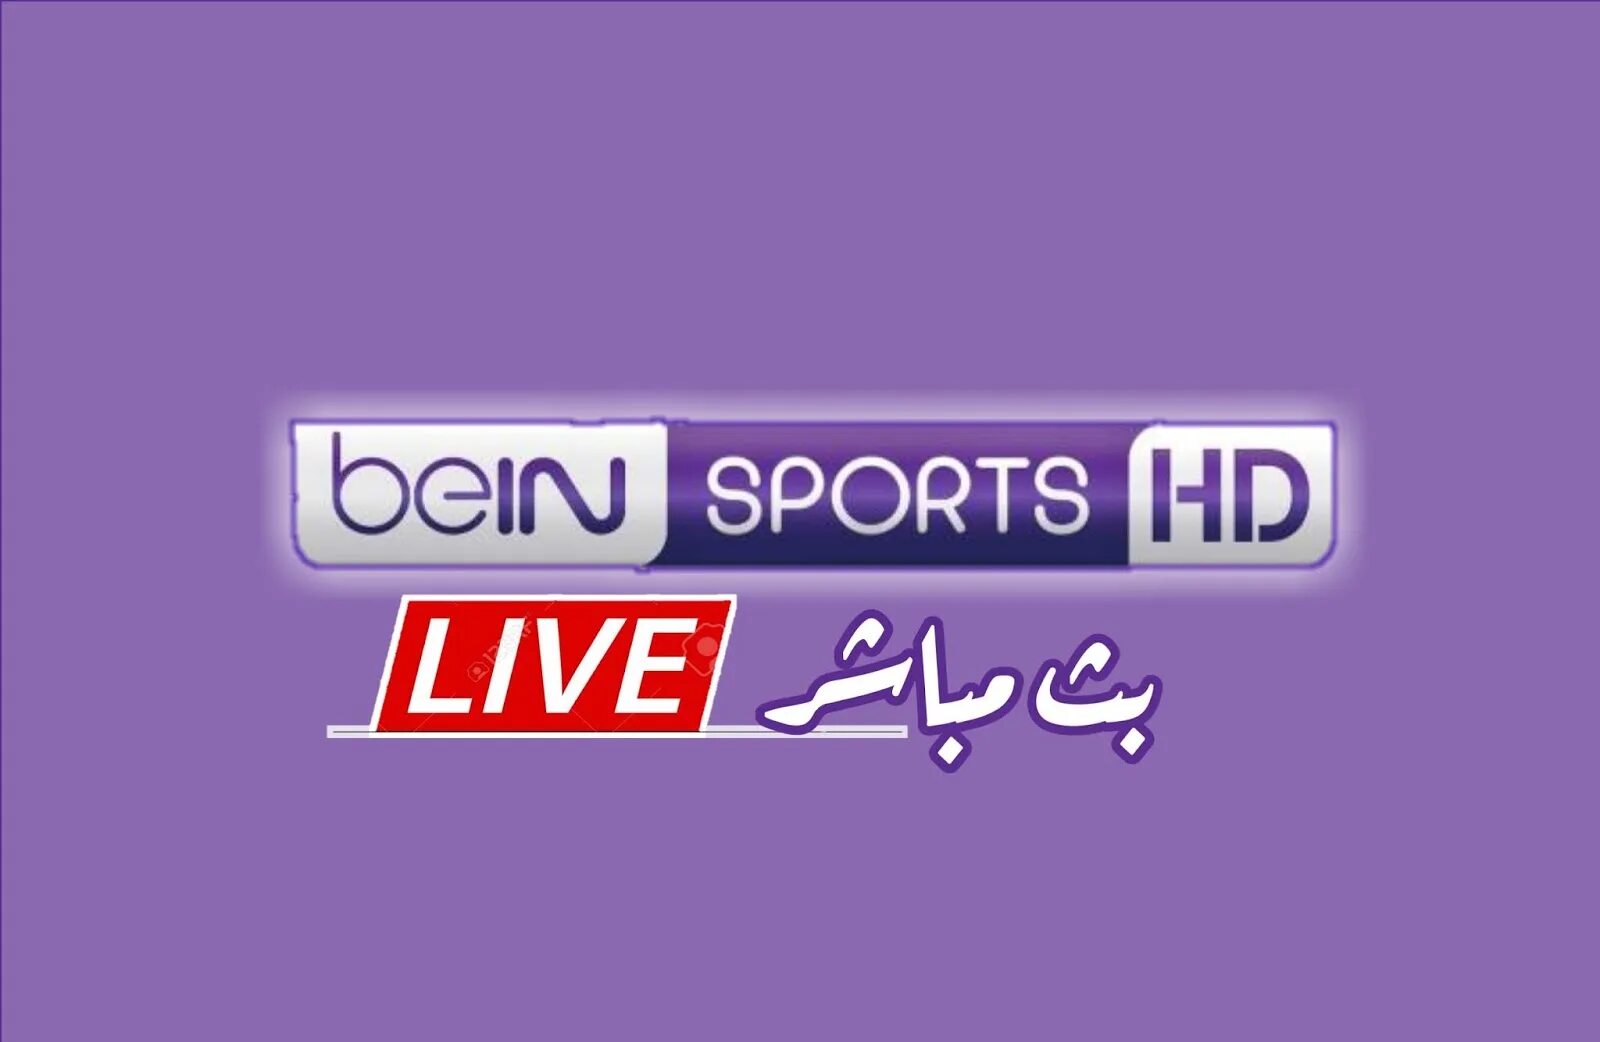 Koora Live. Bein Sport 2 Live. Bein sports live sport streaming